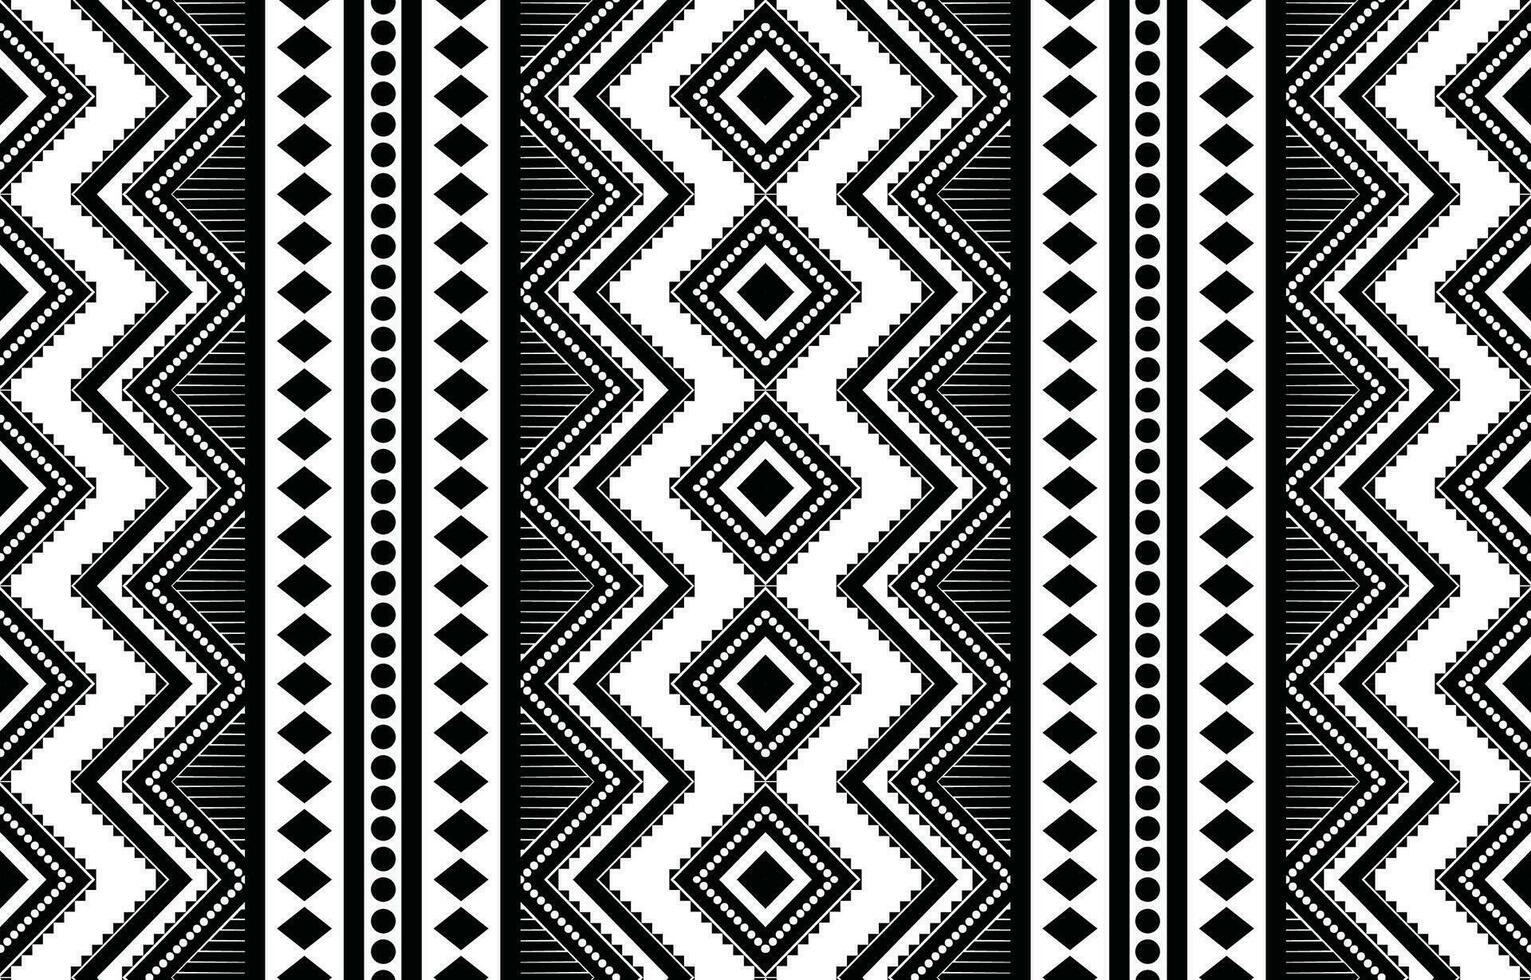 aztec naadloos patroon. tapijt textiel afdrukken structuur tribal ontwerp, meetkundig symbolen voor logo, kaarten, kleding stof decoratief werken. traditioneel afdrukken vector illustratie. Aan zwart en wit achtergrond.